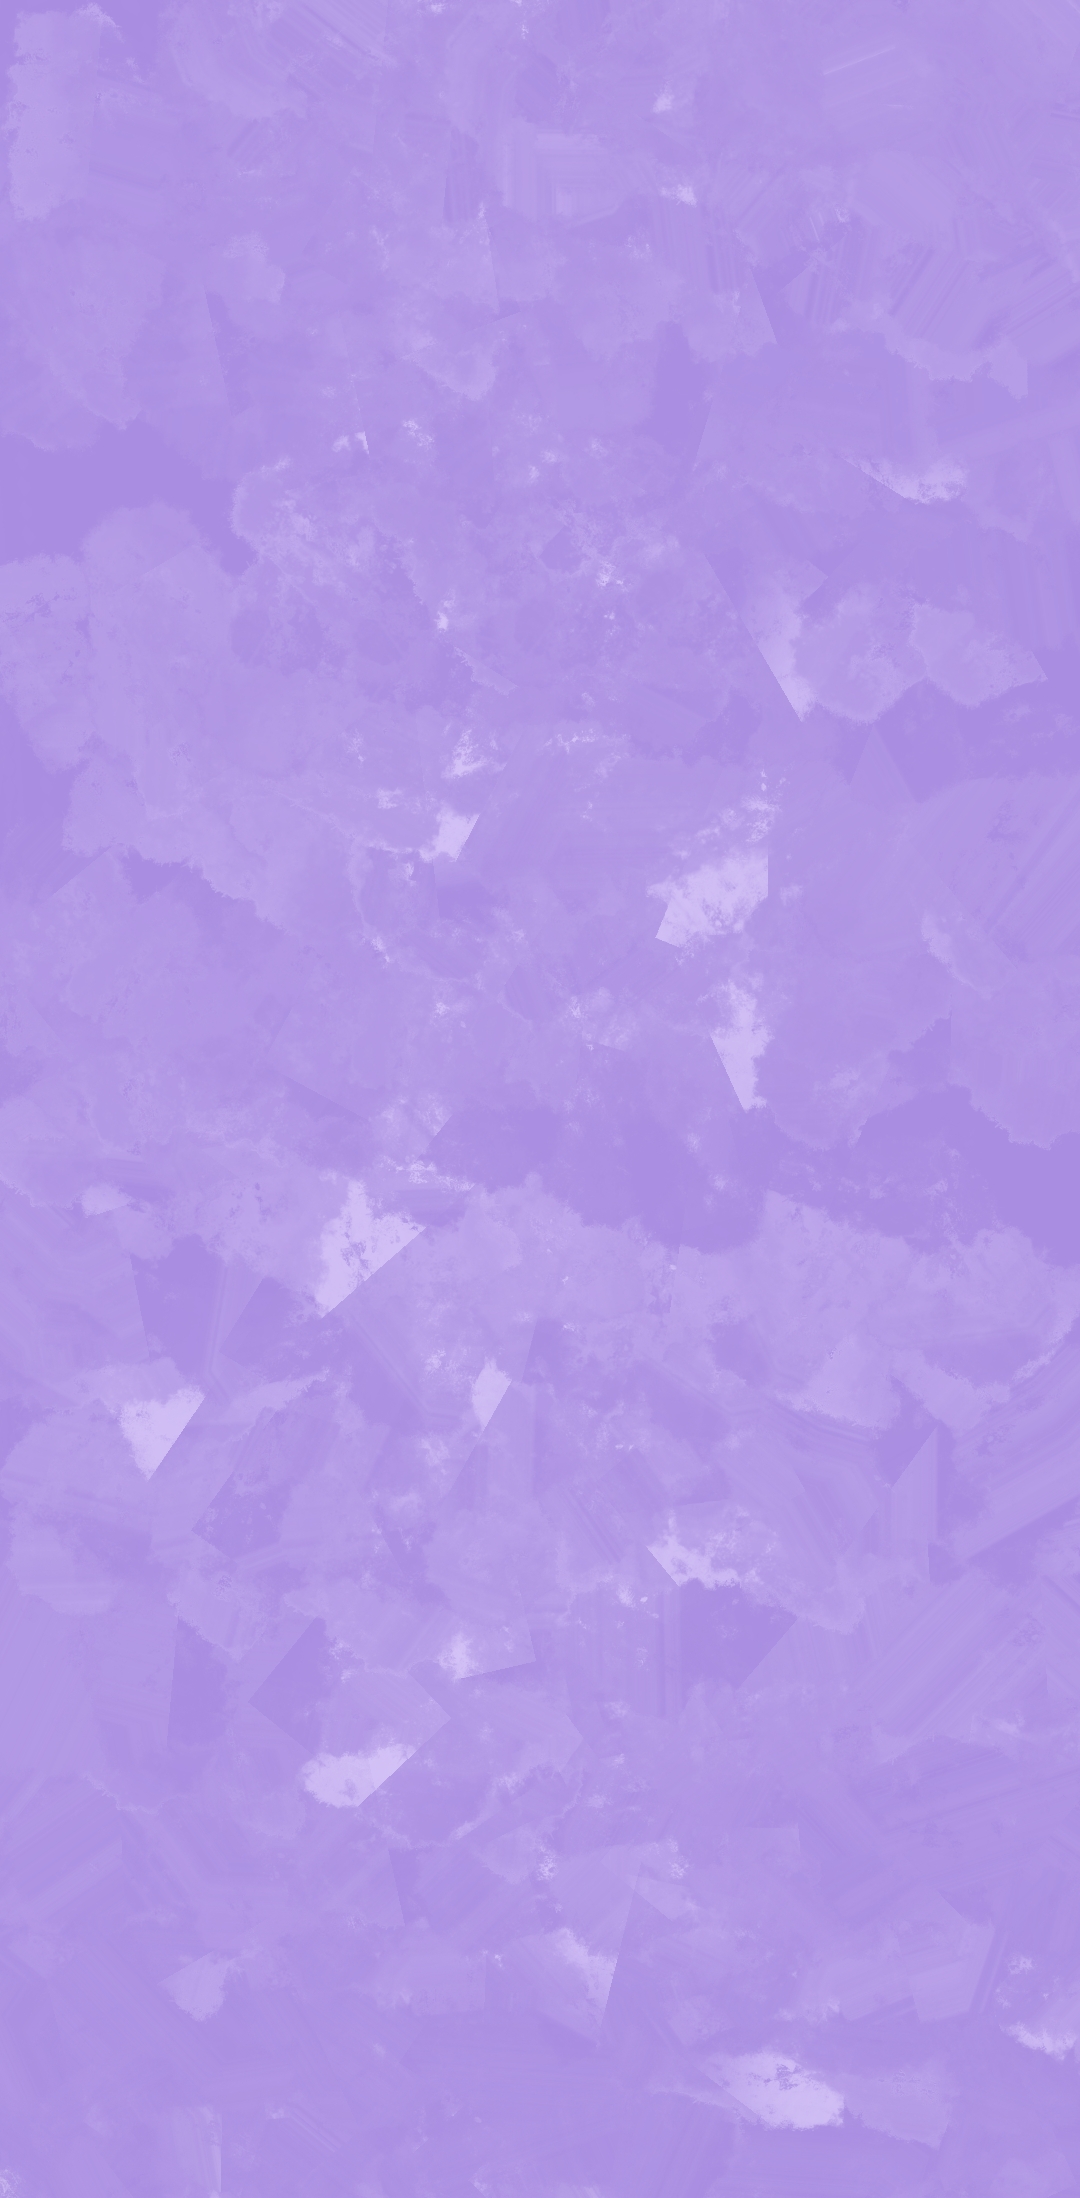 紫色背景图片壁纸,超好看紫色手机壁纸 - 伤感说说吧